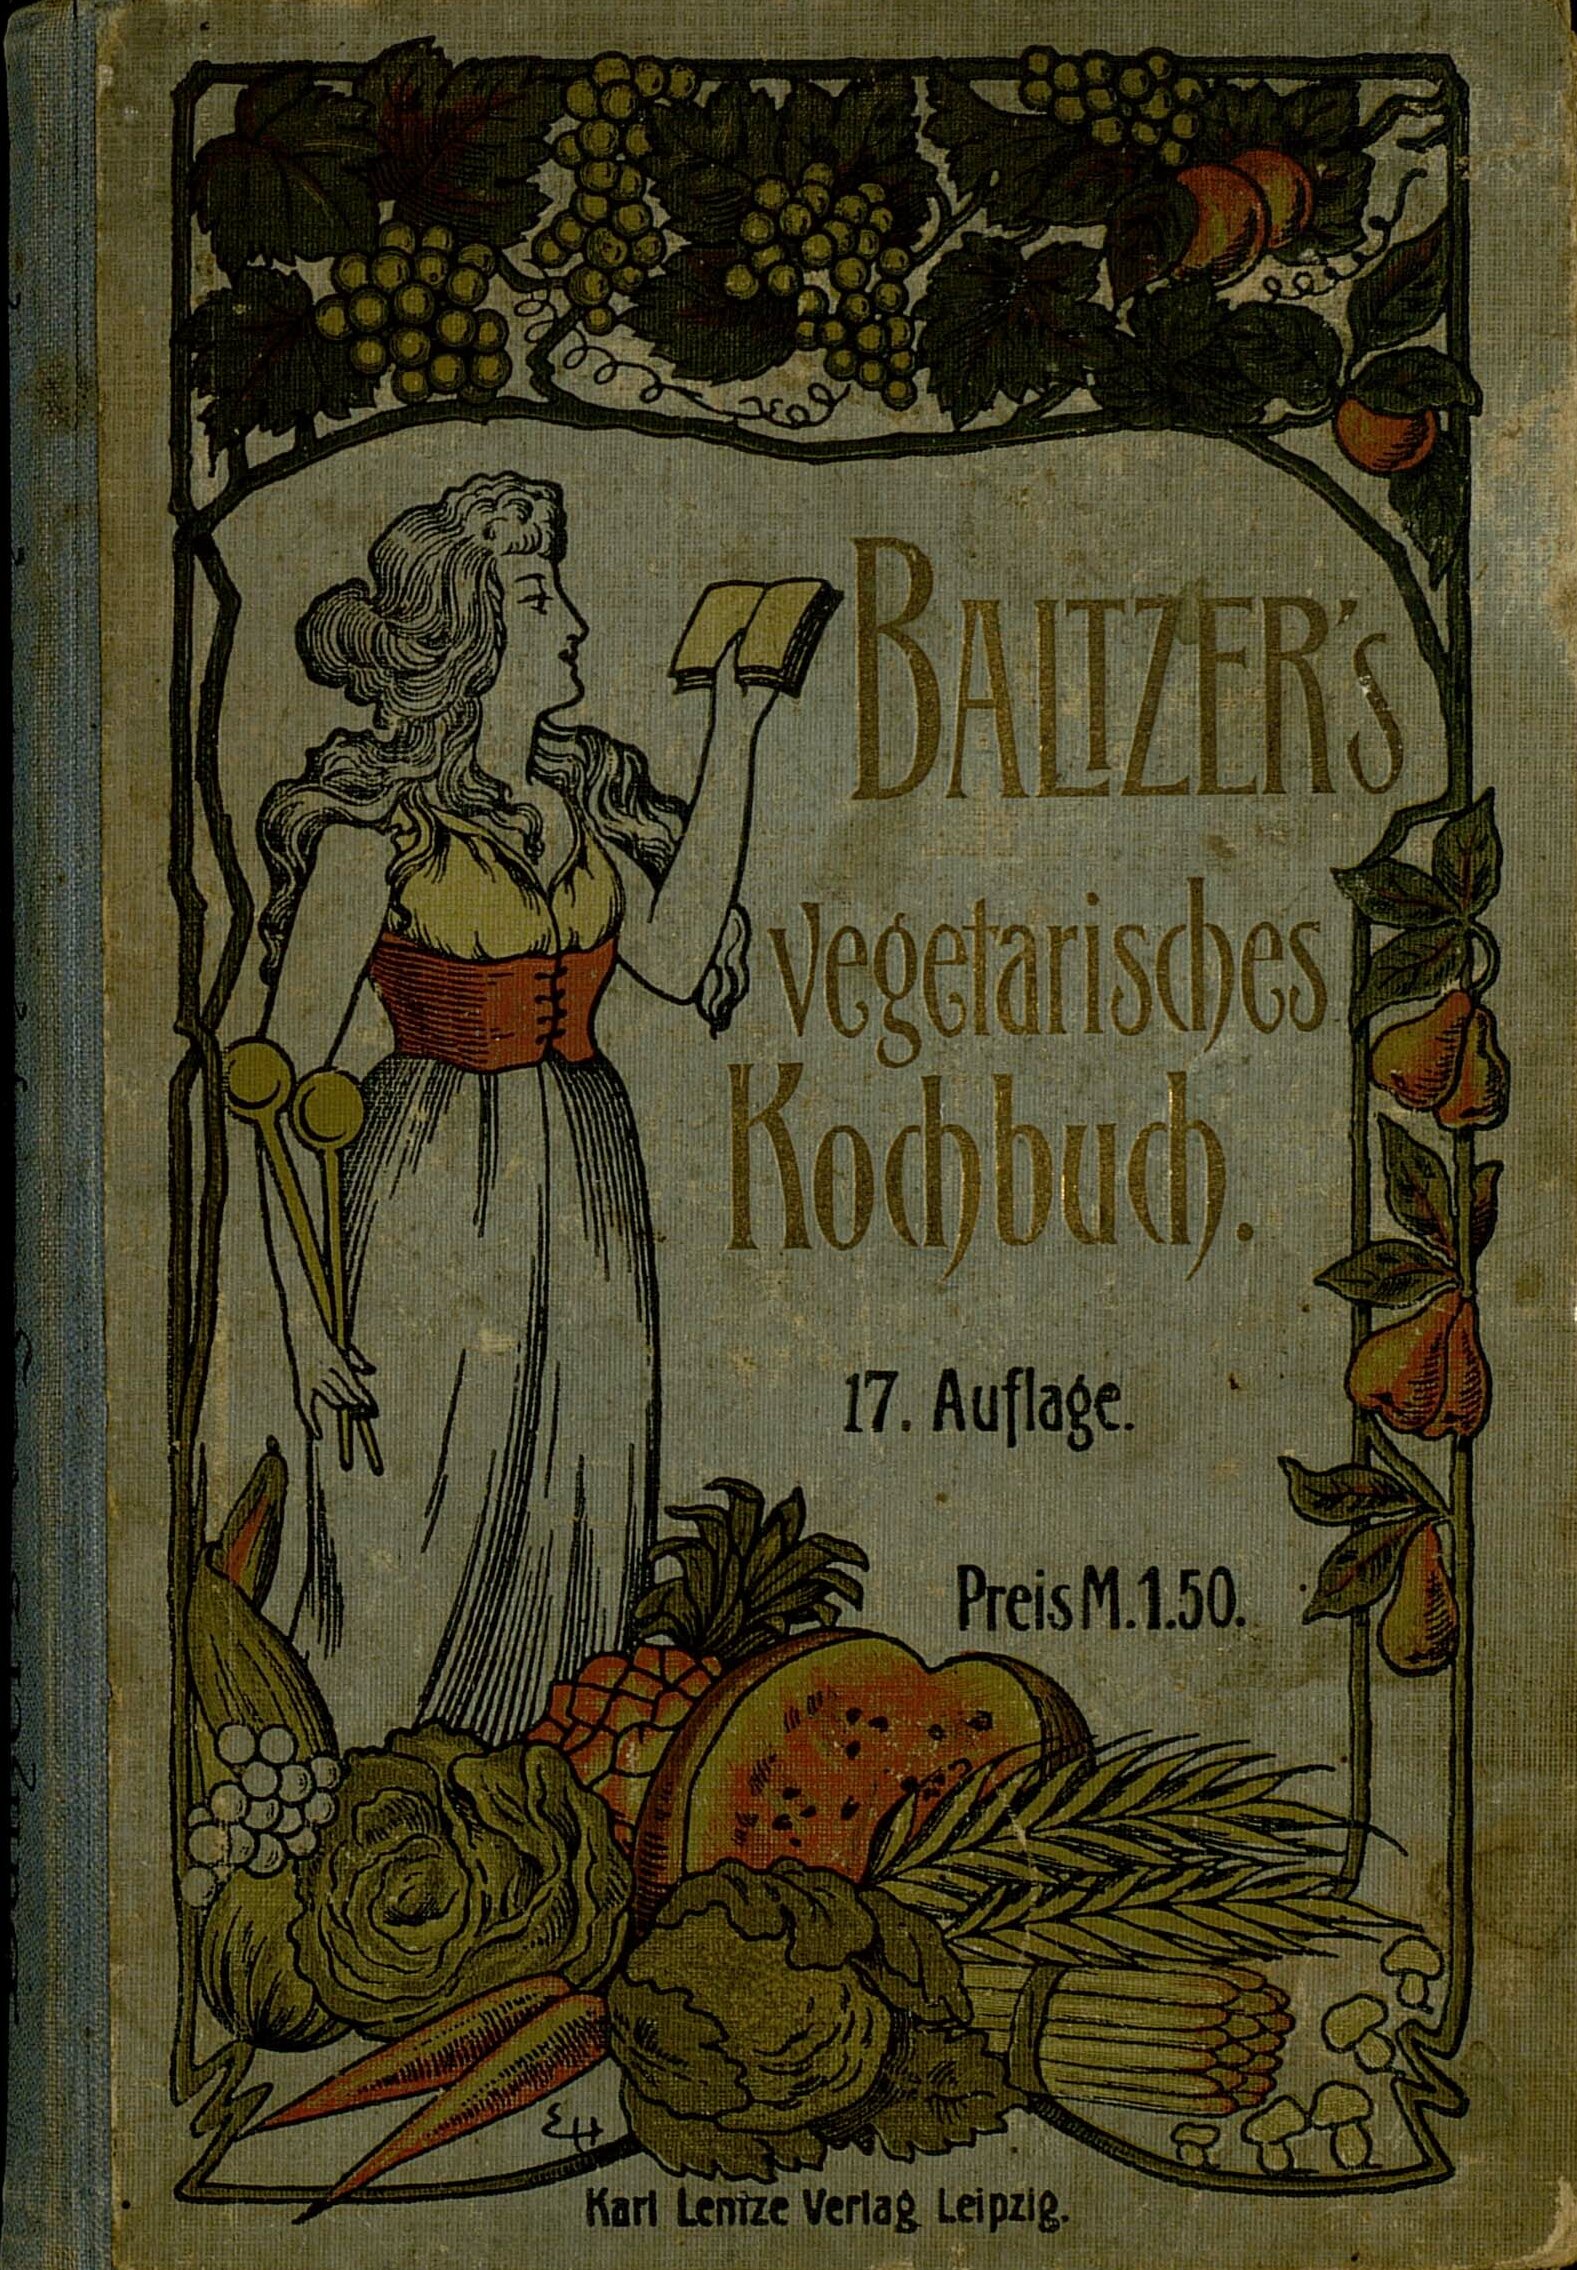 Vegetarisches Kochbuch für Freunde der natürlichen Lebensweise von Eduard Baltzer. Auf dem Buchdeckel sind verschiedene Früchte und Gemüse abgebildet, sowie eine Frau mit zwei Kochlöffeln und einem Buch in den Händen.